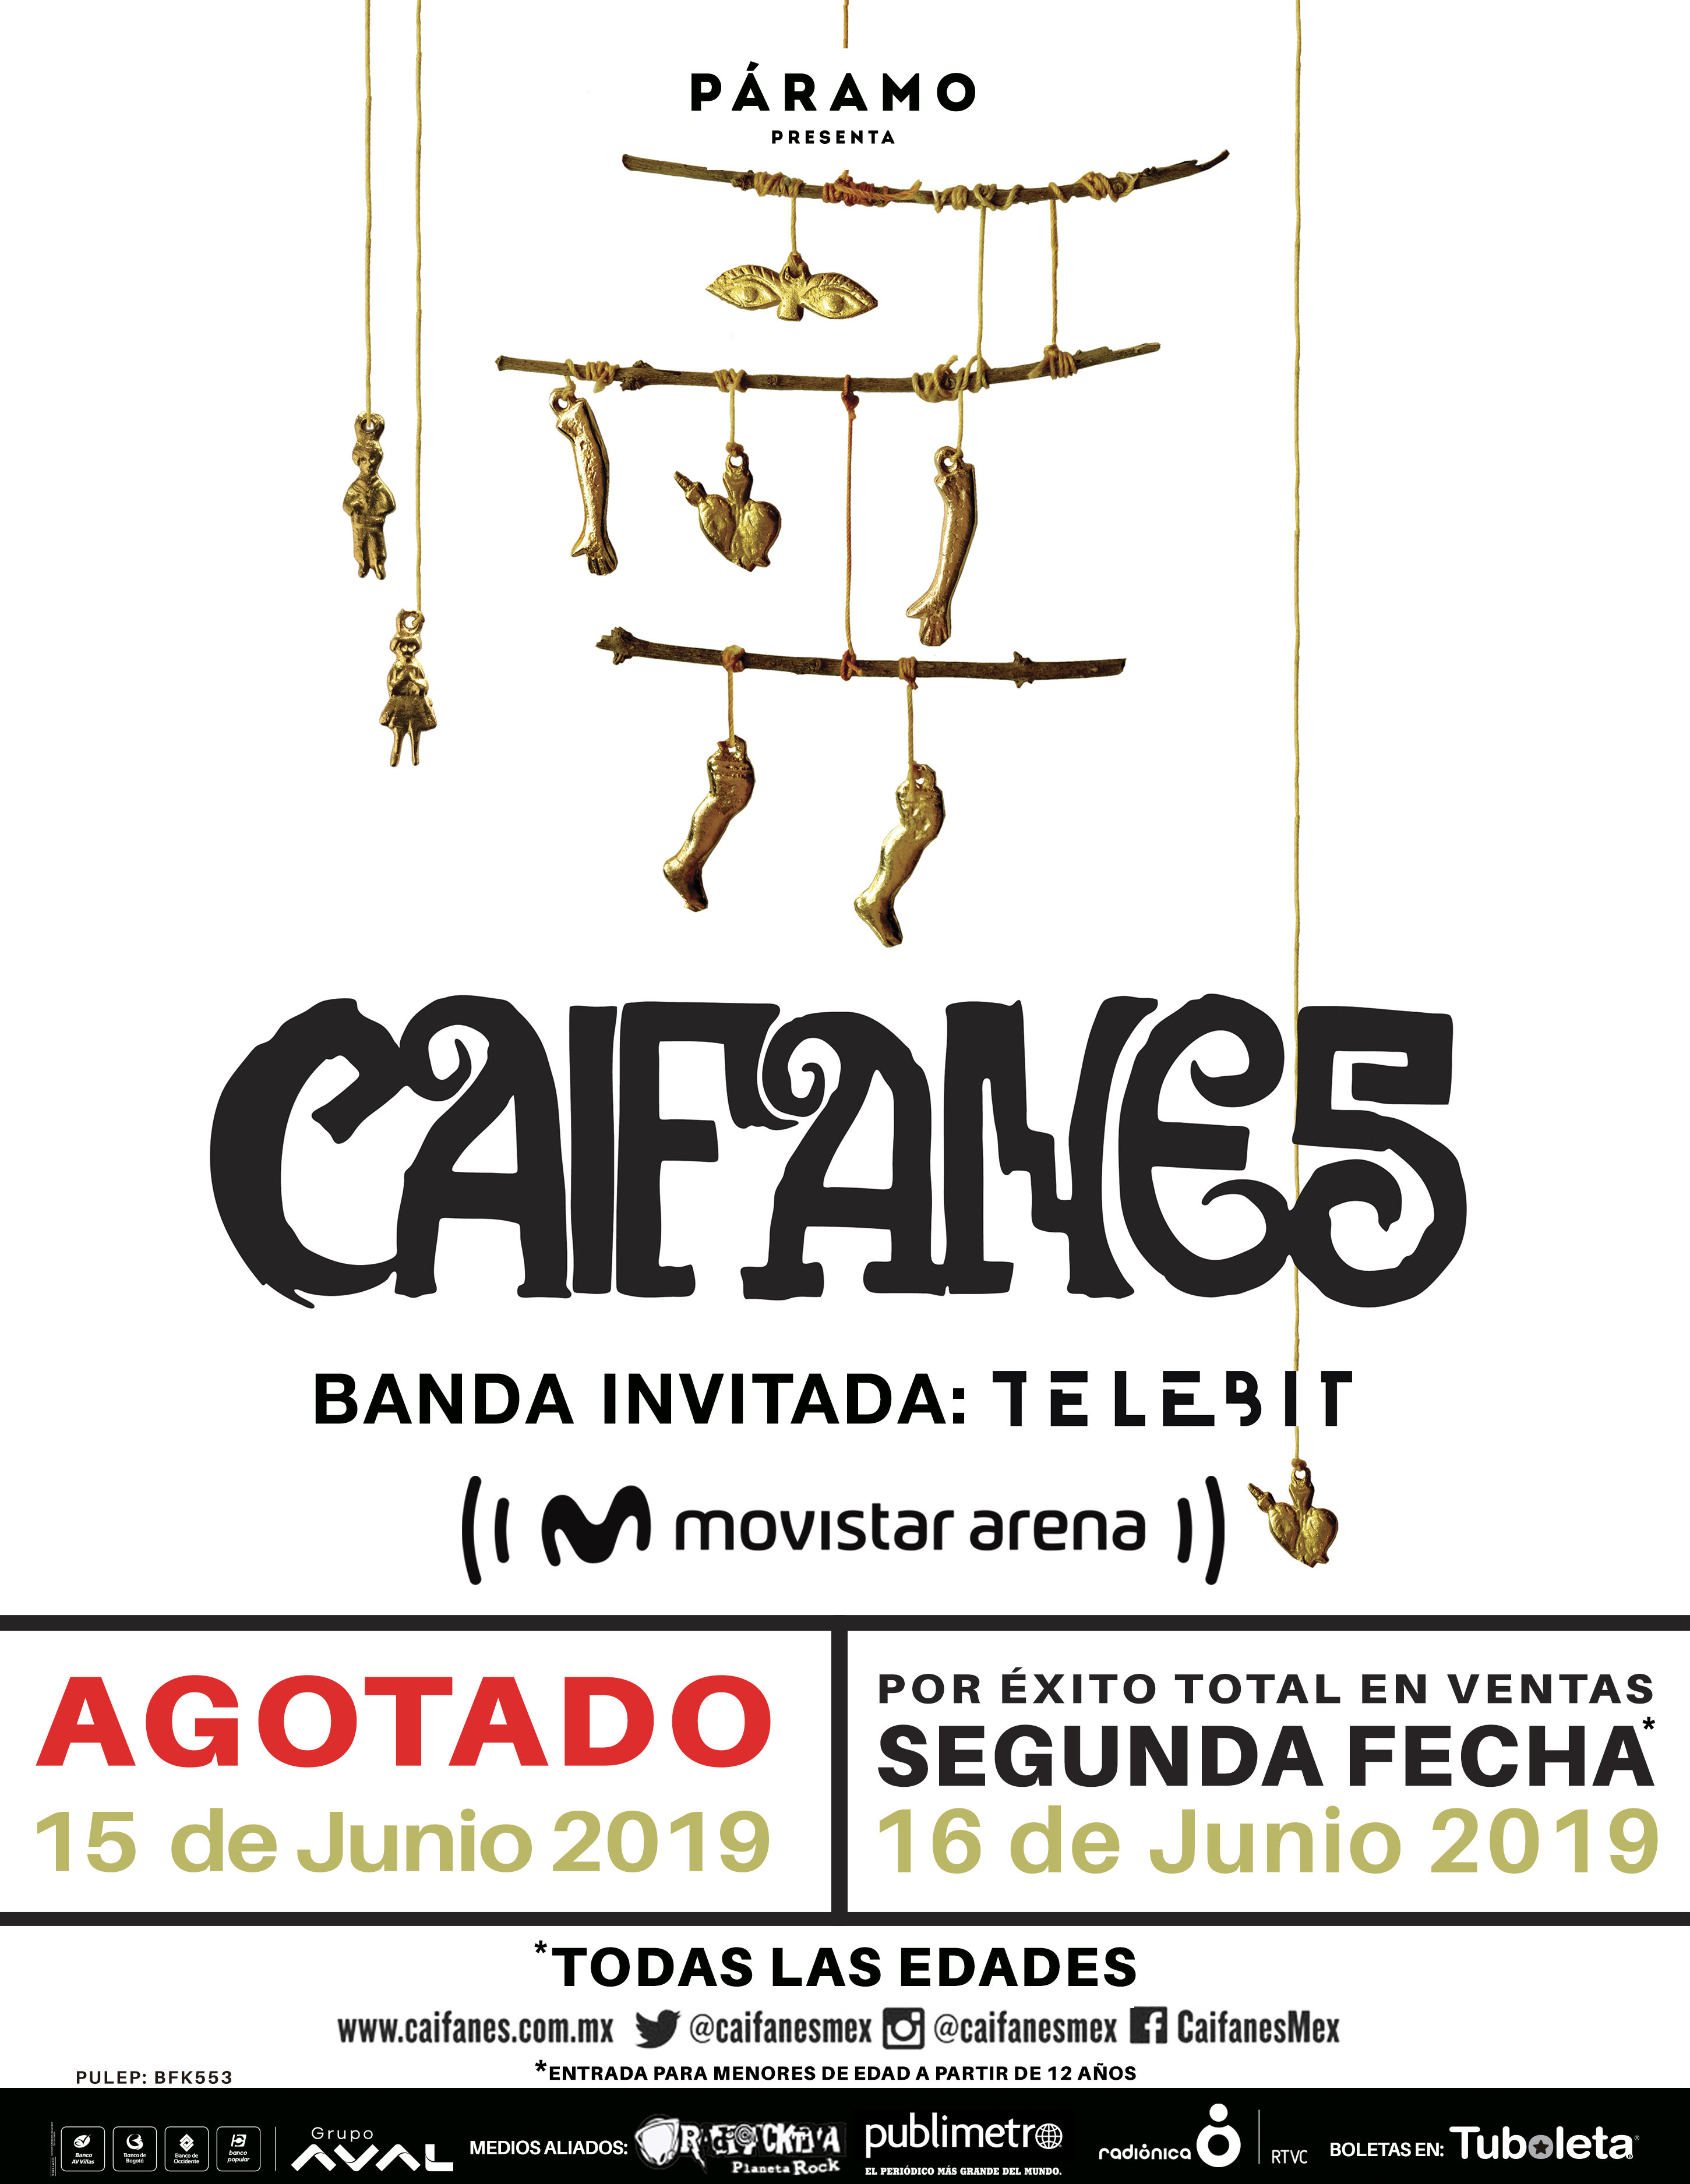 Telebit estará junto a Caifanes en el Movistar Arena de Bogotá.